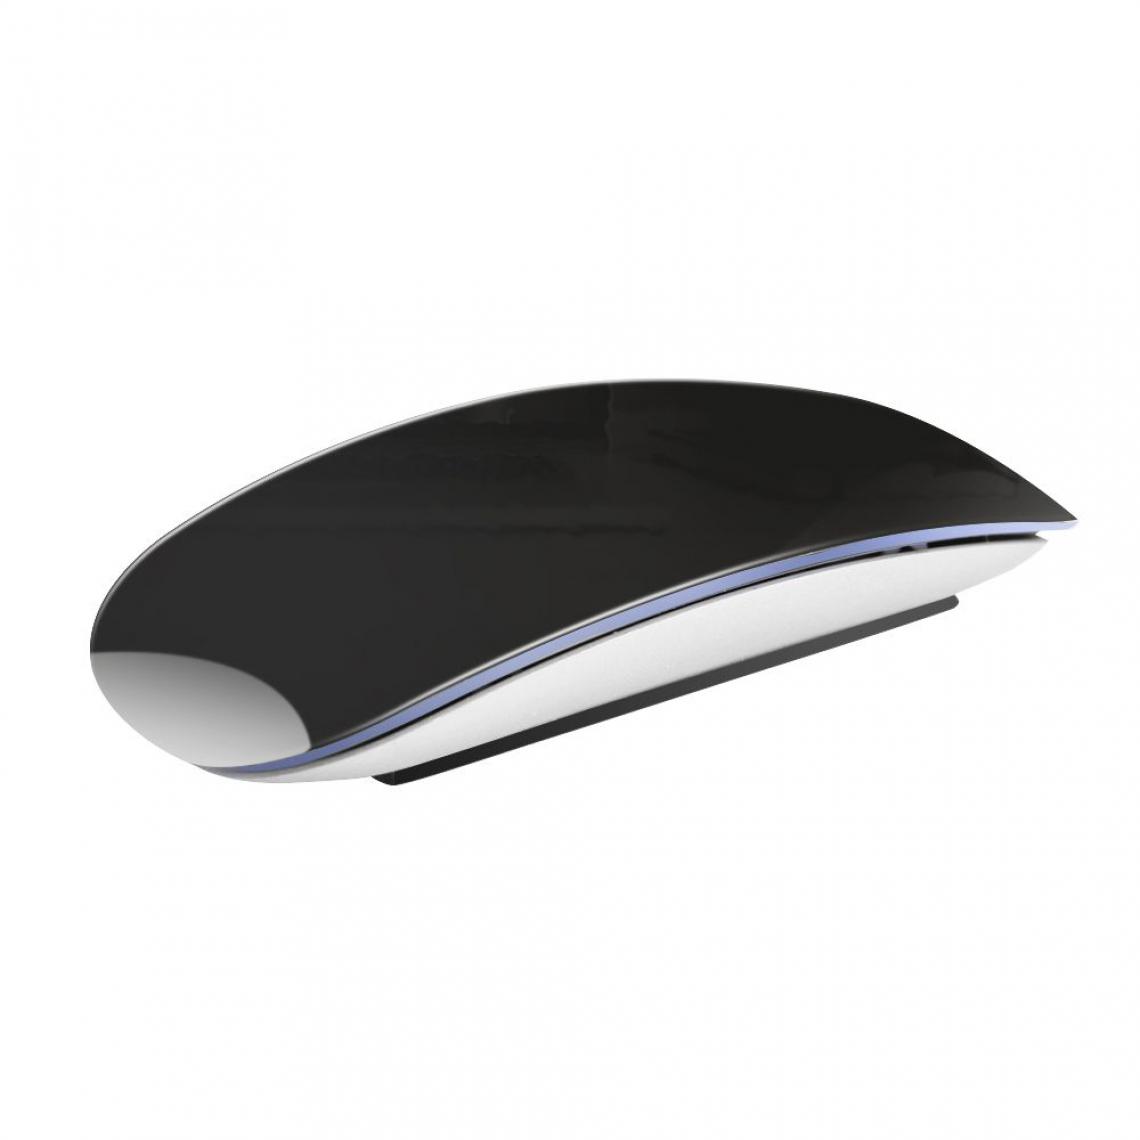 Generic - Souris sans fil Magic Arc Touch  , Bluetooth 5.0, 1600 DPI, Rechargeable,  pour ordinateur Apple et Macbook 4.48 * 2.32  * 0.7 Inch - Noir  - Souris